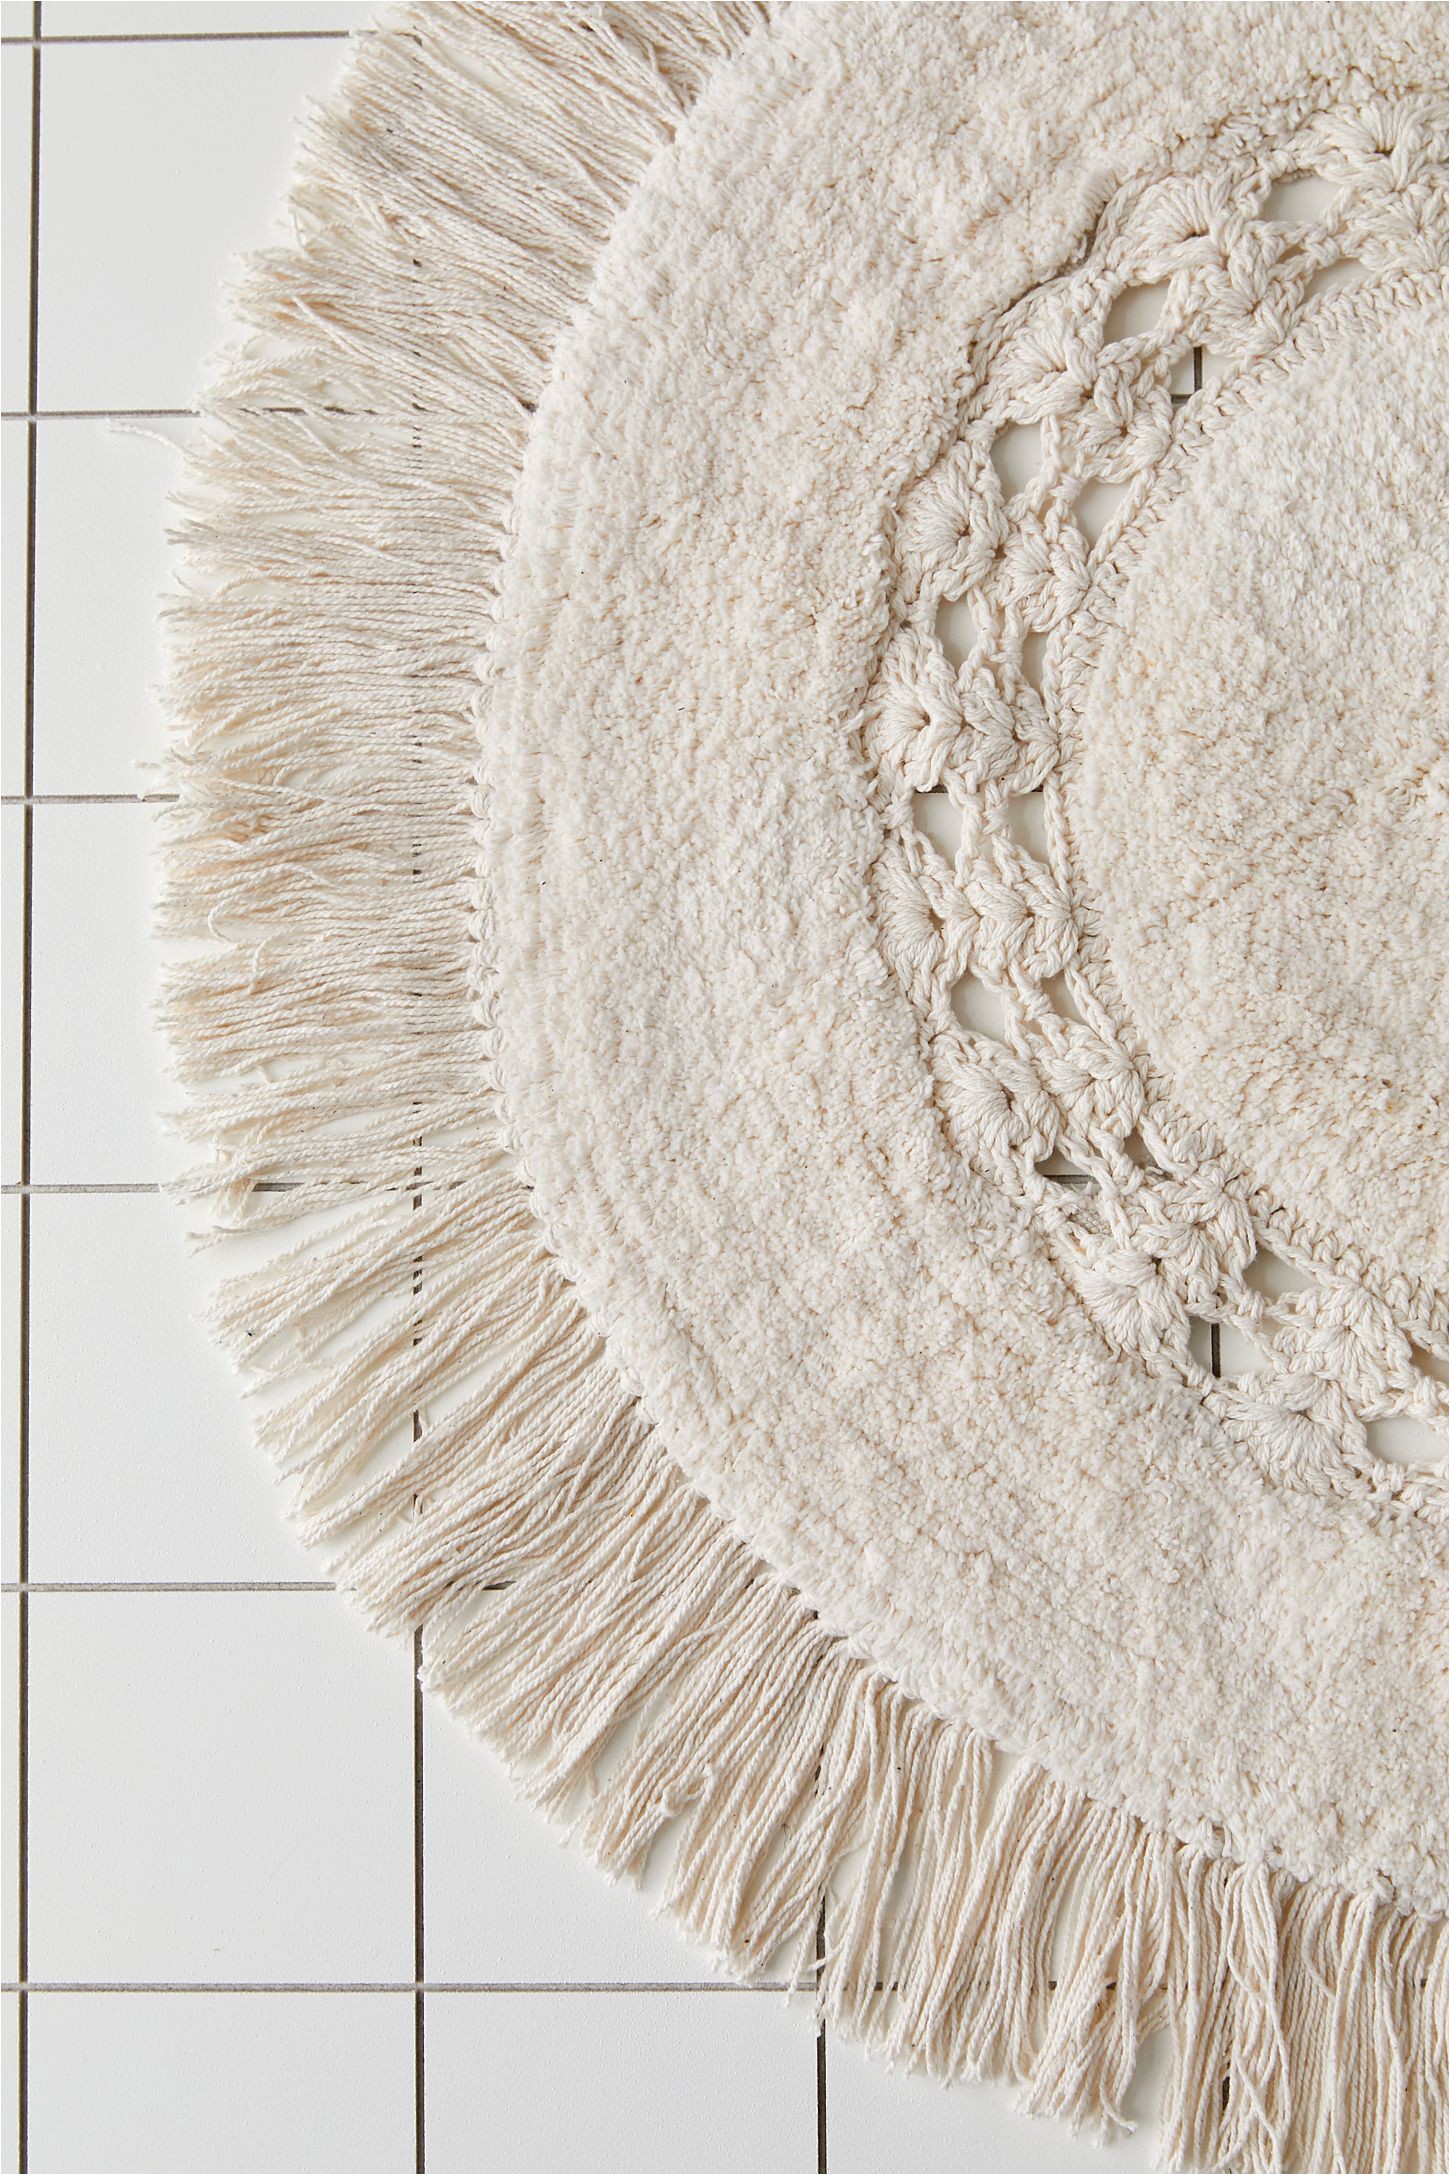 4 Foot Round Bathroom Rug Raine Crochet Round Bath Mat In 2020